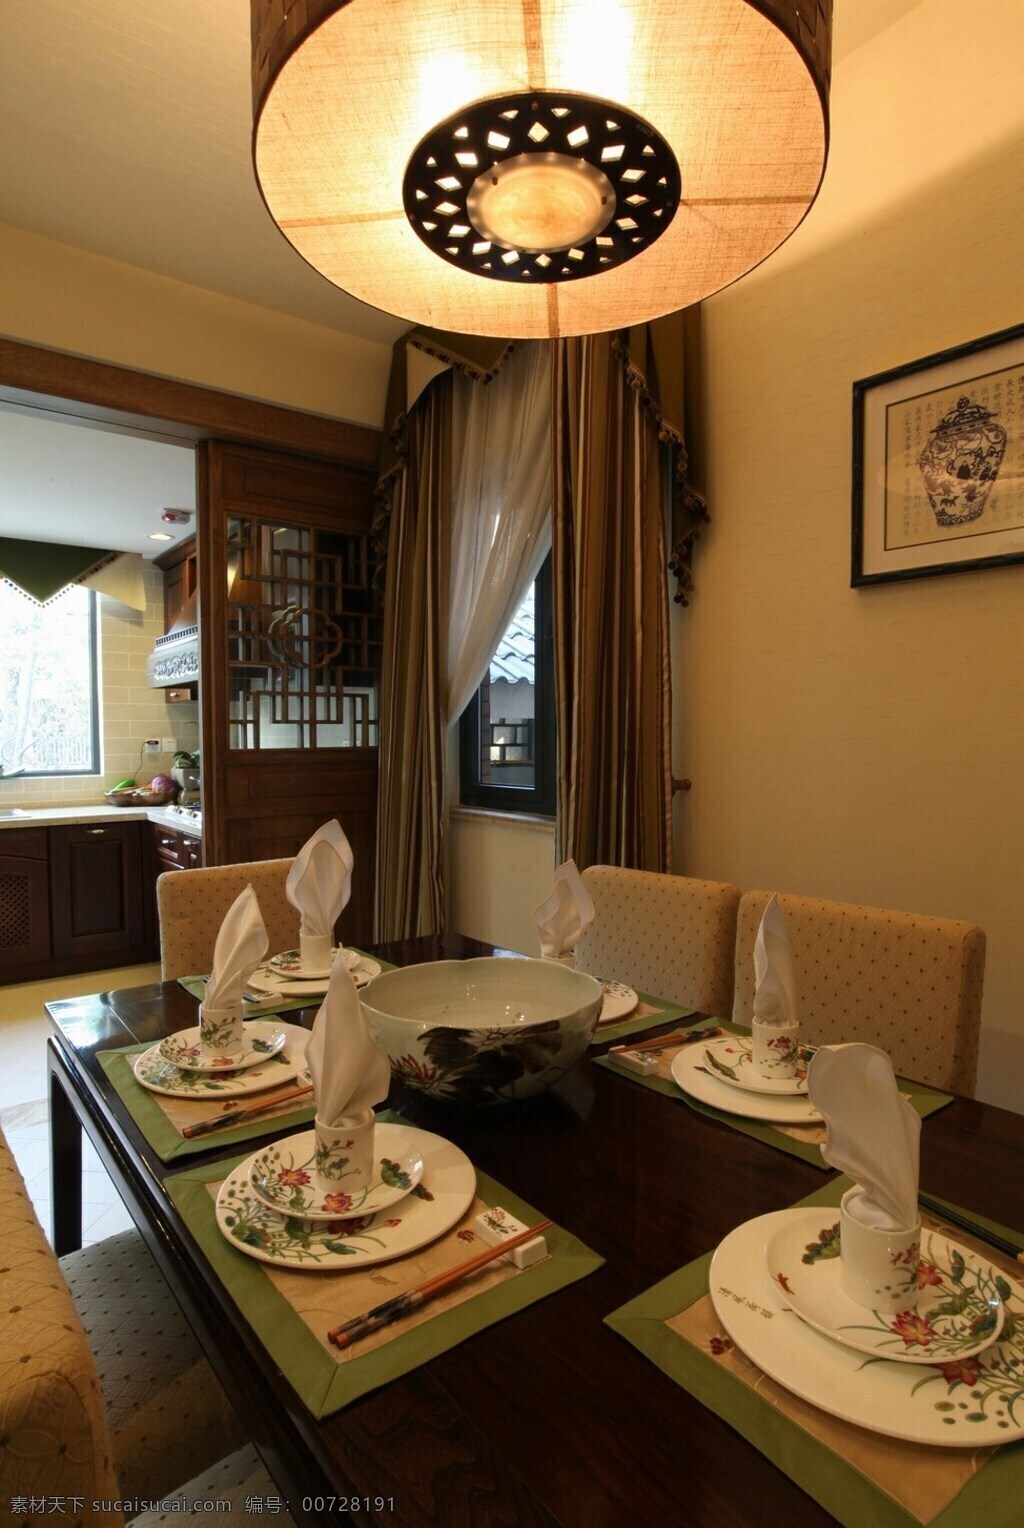 室内 餐厅 移门 中式 复古 装修 效果图 复古餐桌 吊灯 精美瓷盘